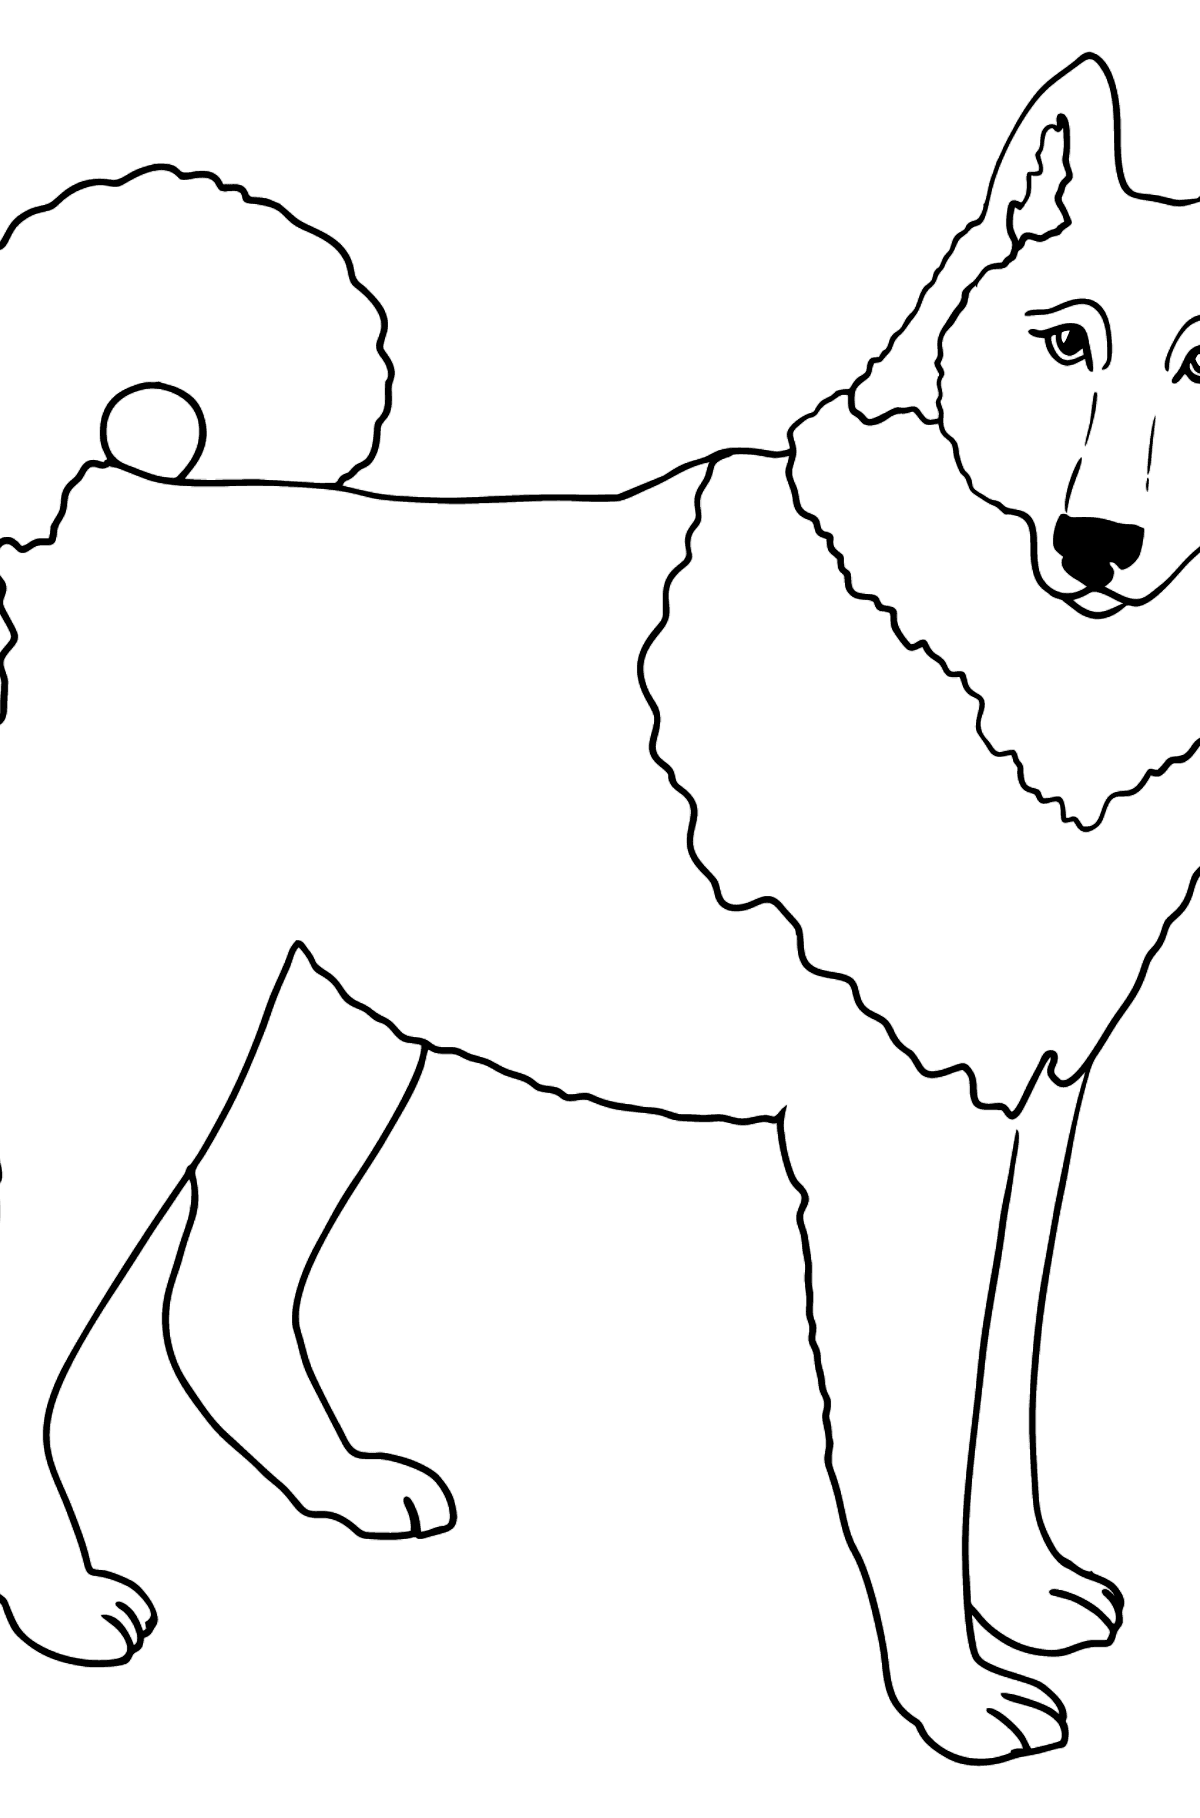 Desenho do Husky Siberiano para colorir - Imagens para Colorir para Crianças